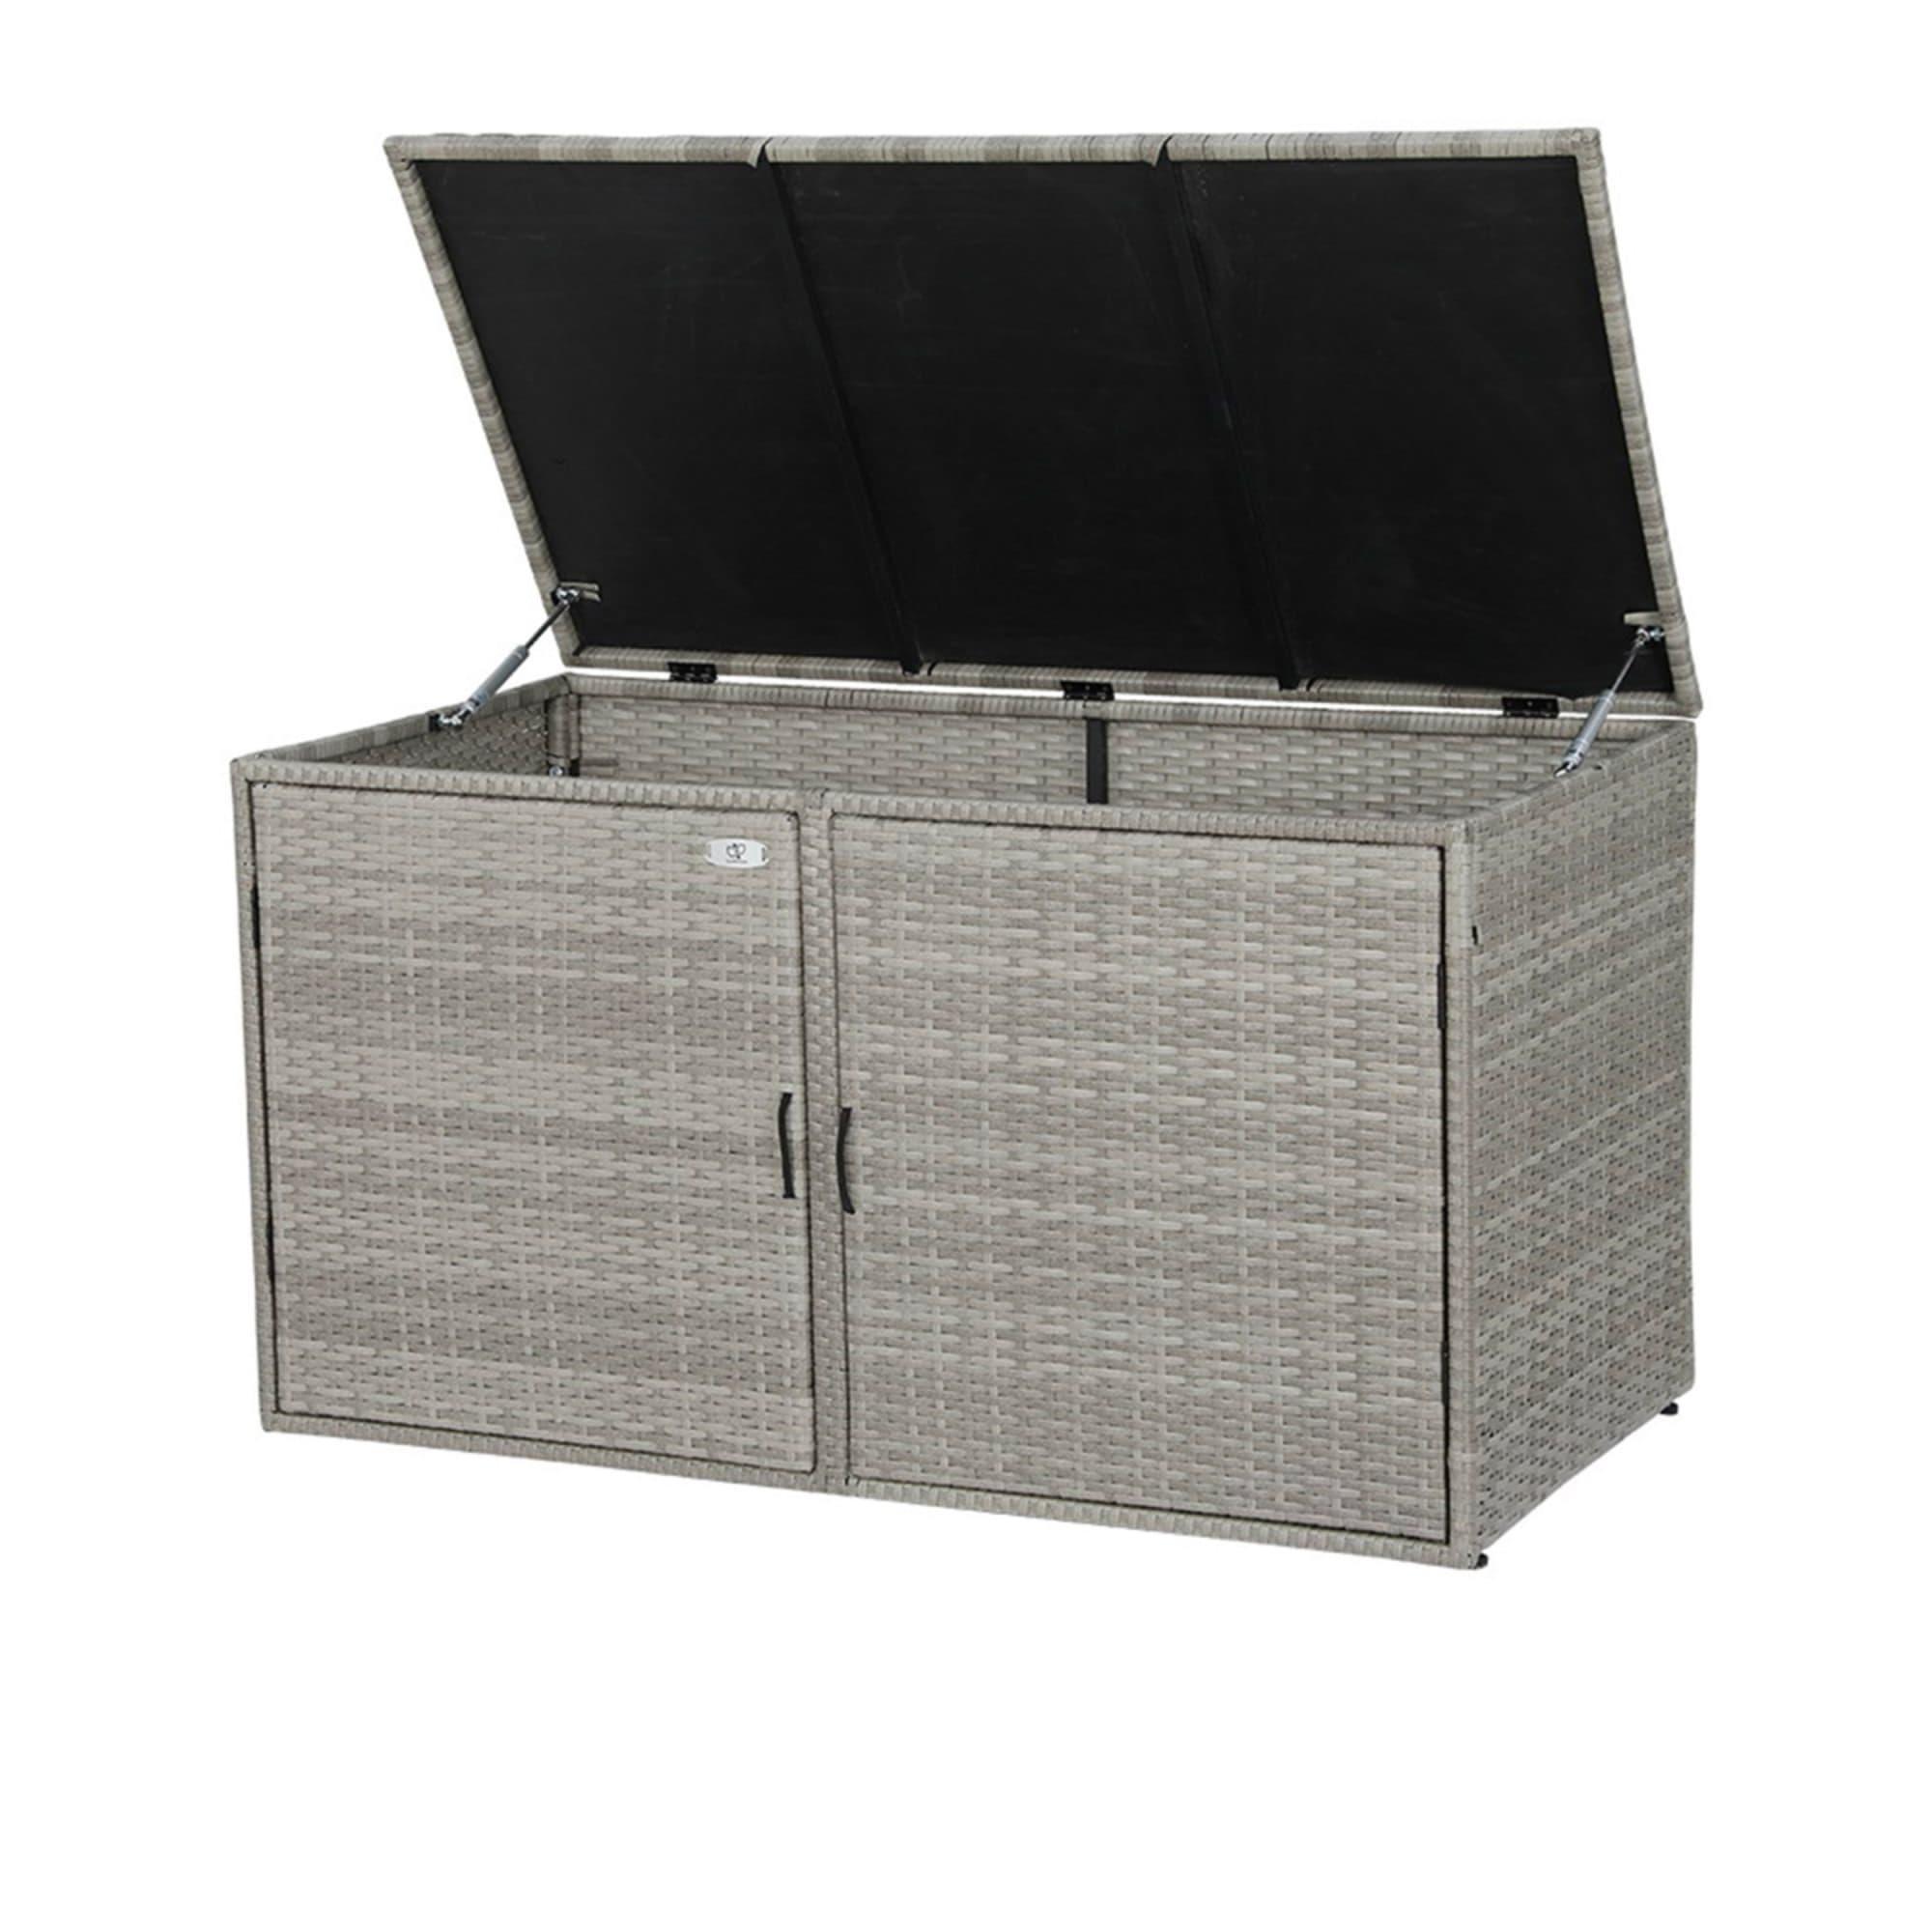 Gardeon Outdoor Storage Box Wicker Shelf Chest 333L Image 4